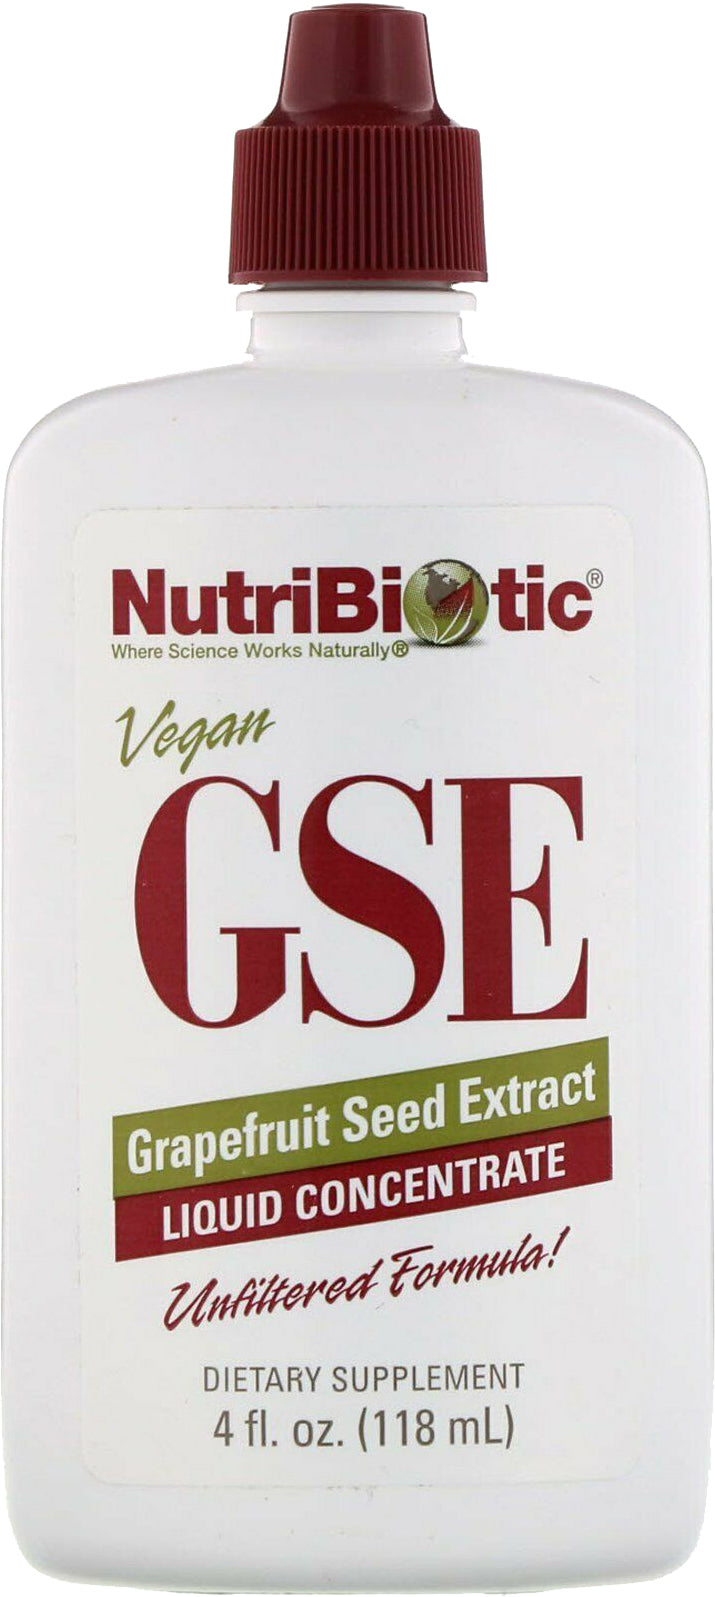 Vegan GSE Grapefruit Seed Extract Liquid Concentrate, 4 Fl Oz (118 mL) Liquid